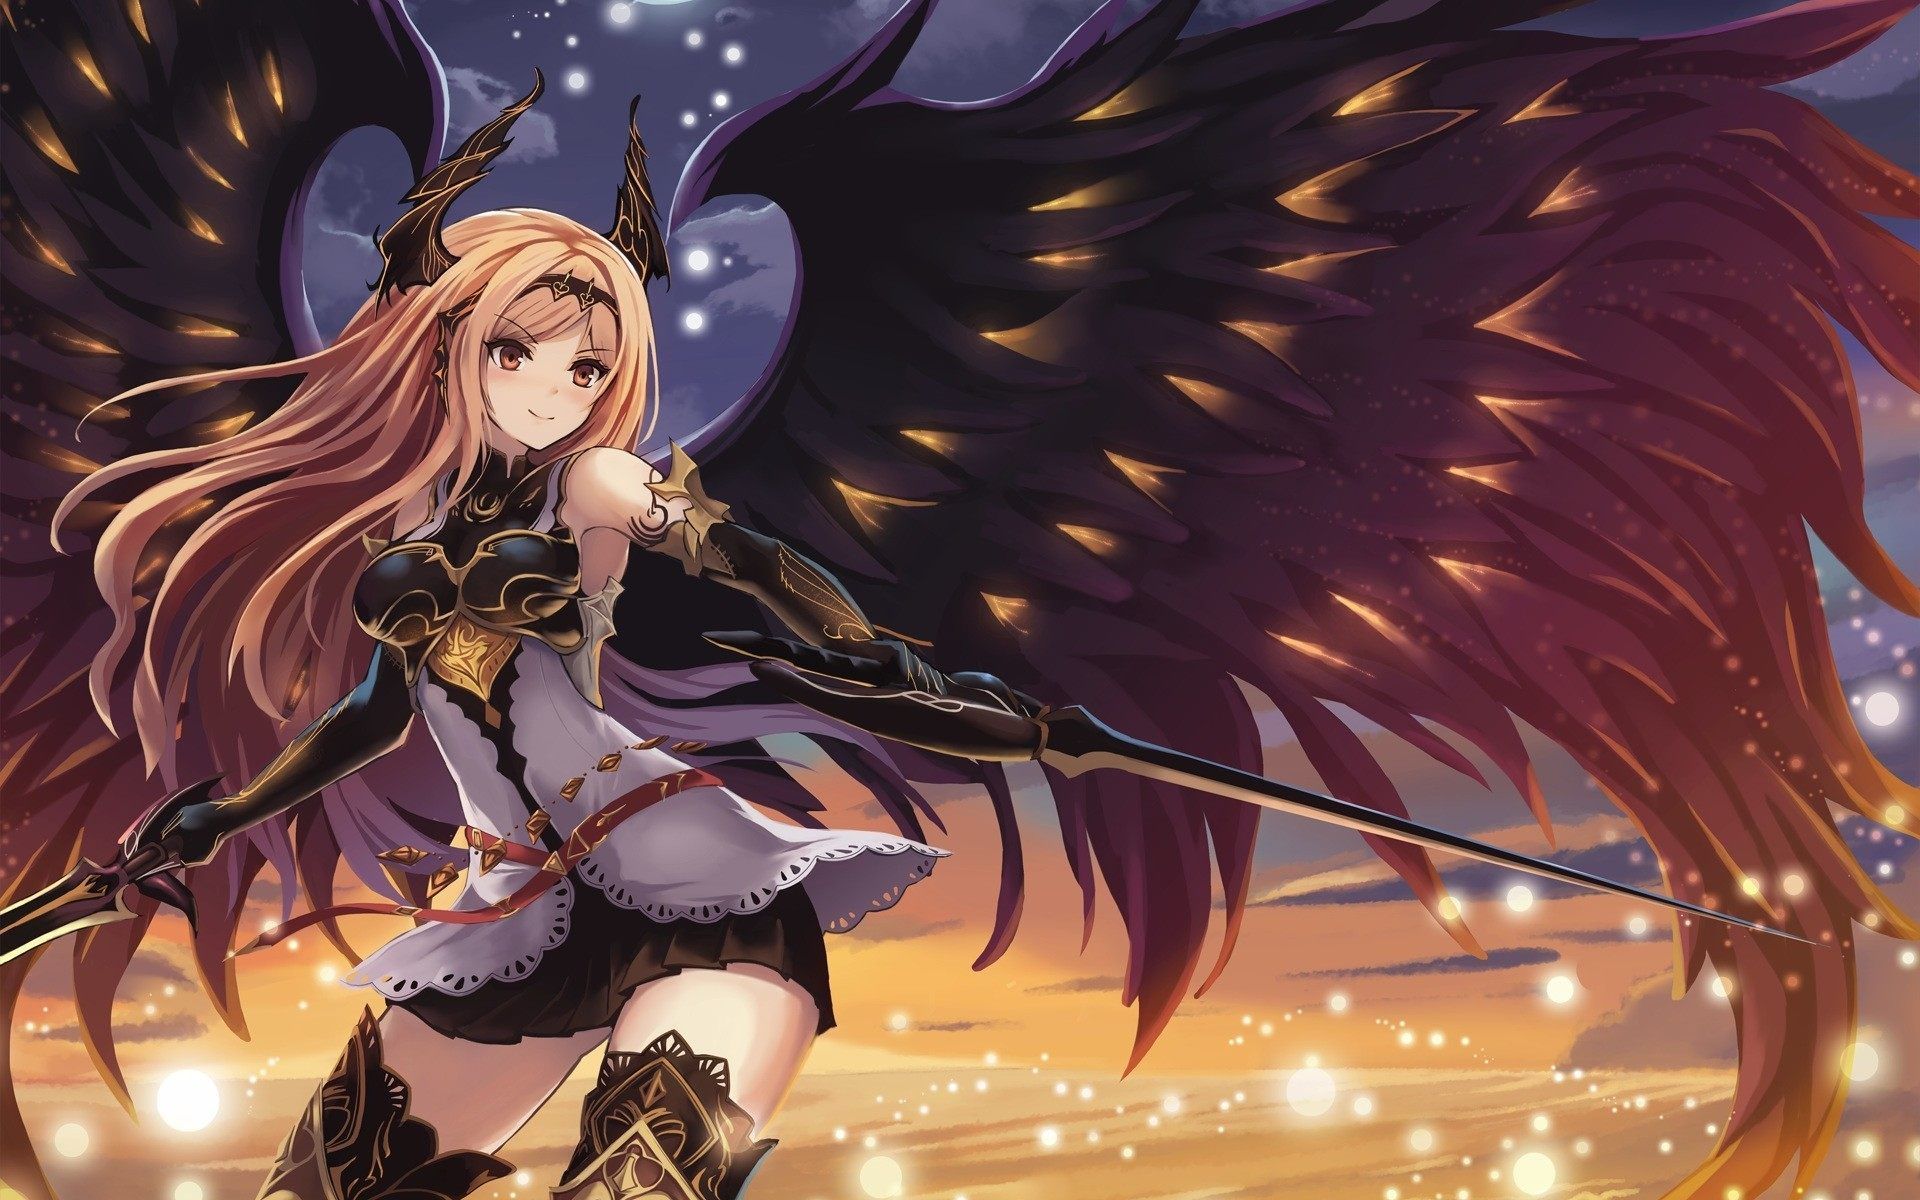 Anime Angel Girl Wallpaper Free Anime Angel Girl Background